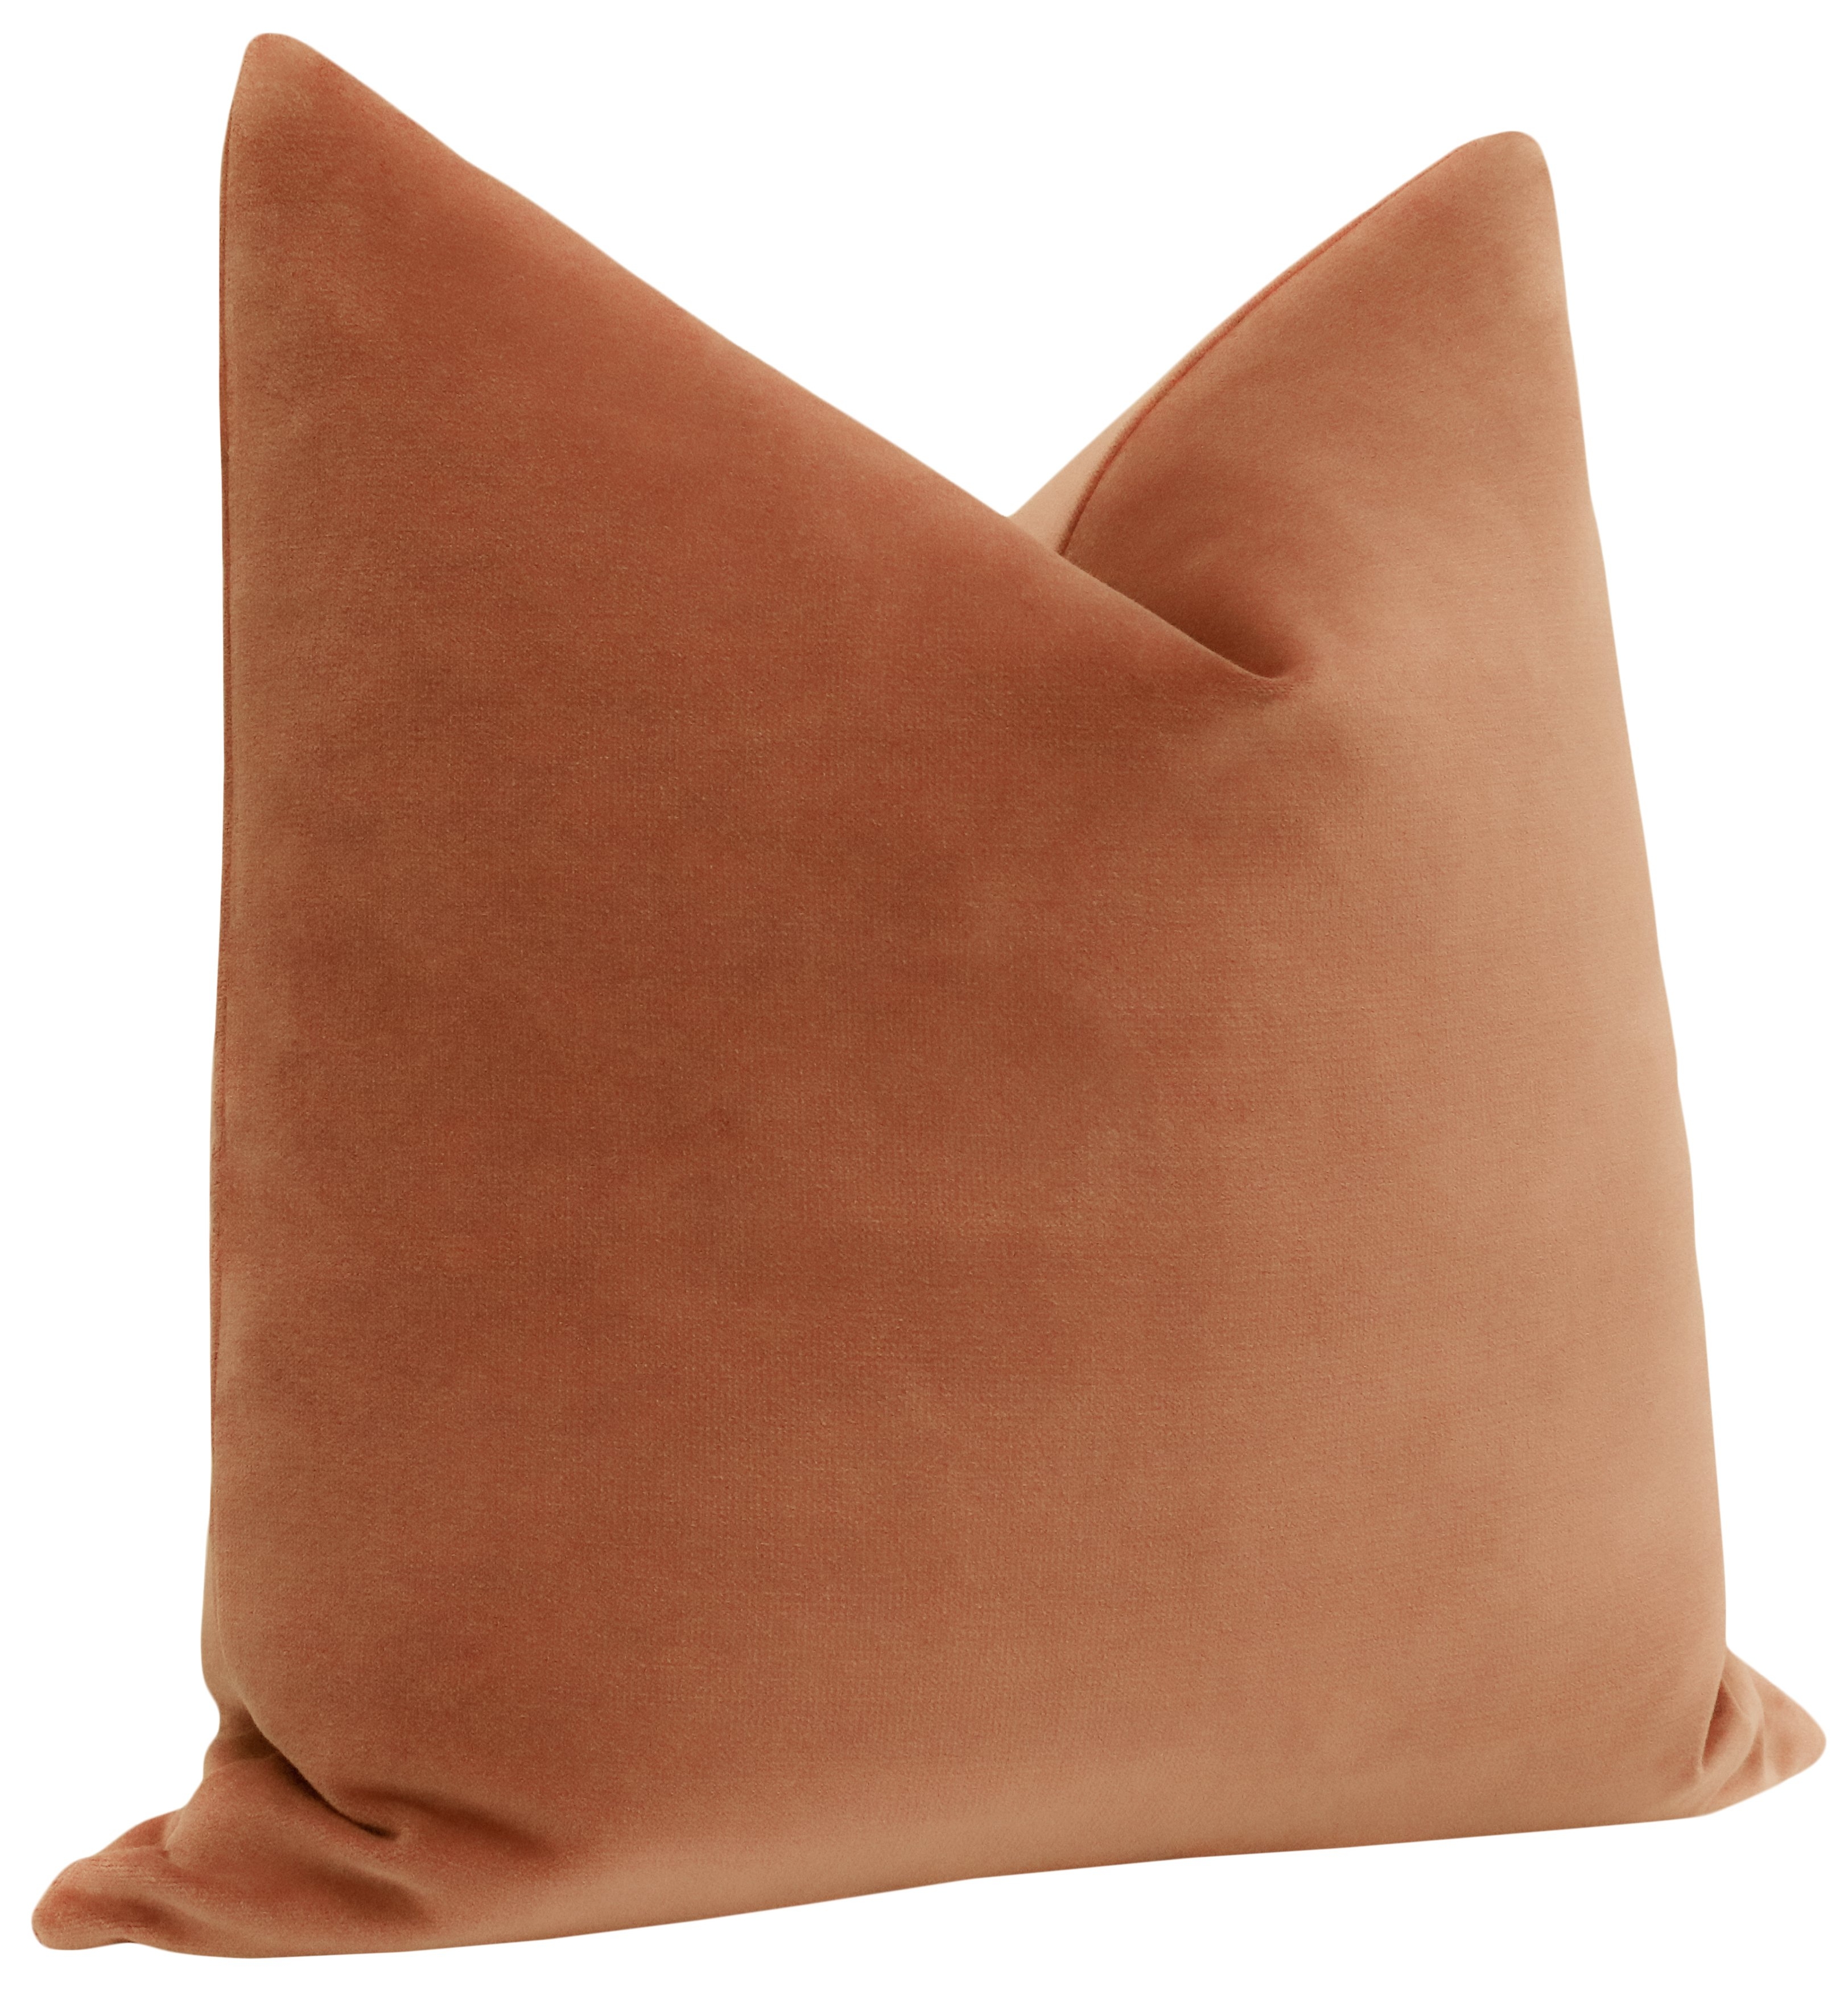 Sonoma Velvet Pillow Cover, Amber, 18" x 18" - Image 1